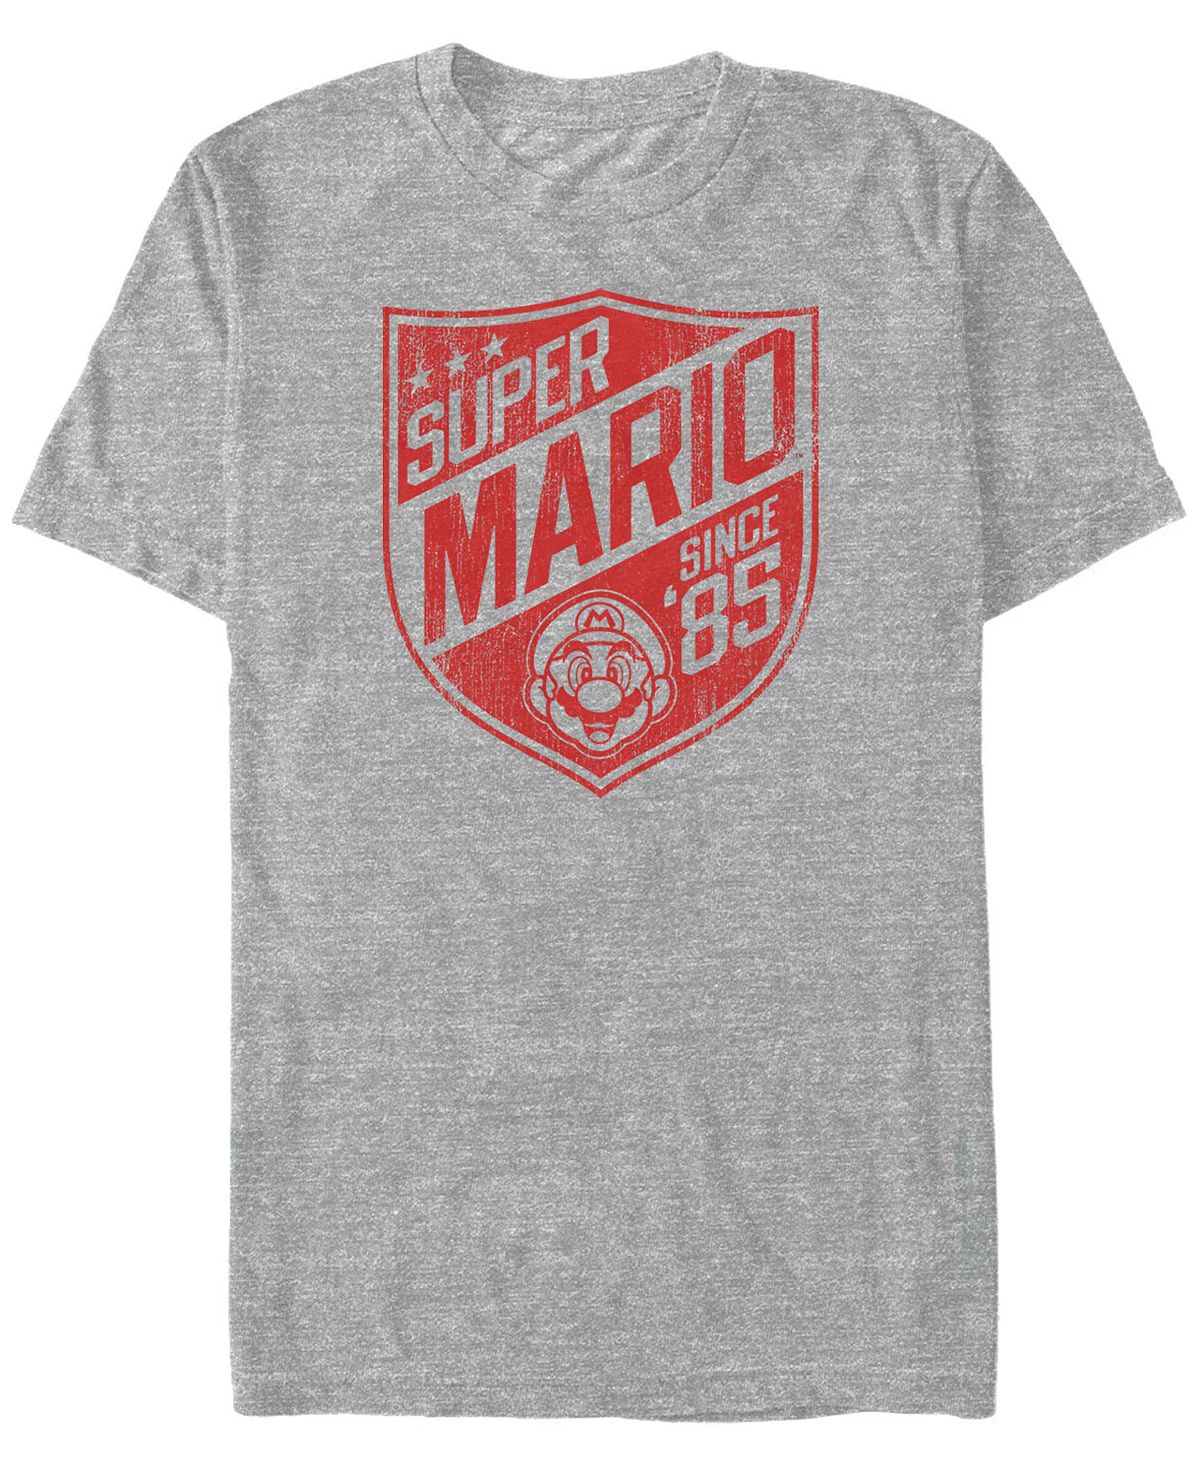 Мужская футболка с коротким рукавом и логотипом nintendo super mario с '85 Fifth Sun, мульти